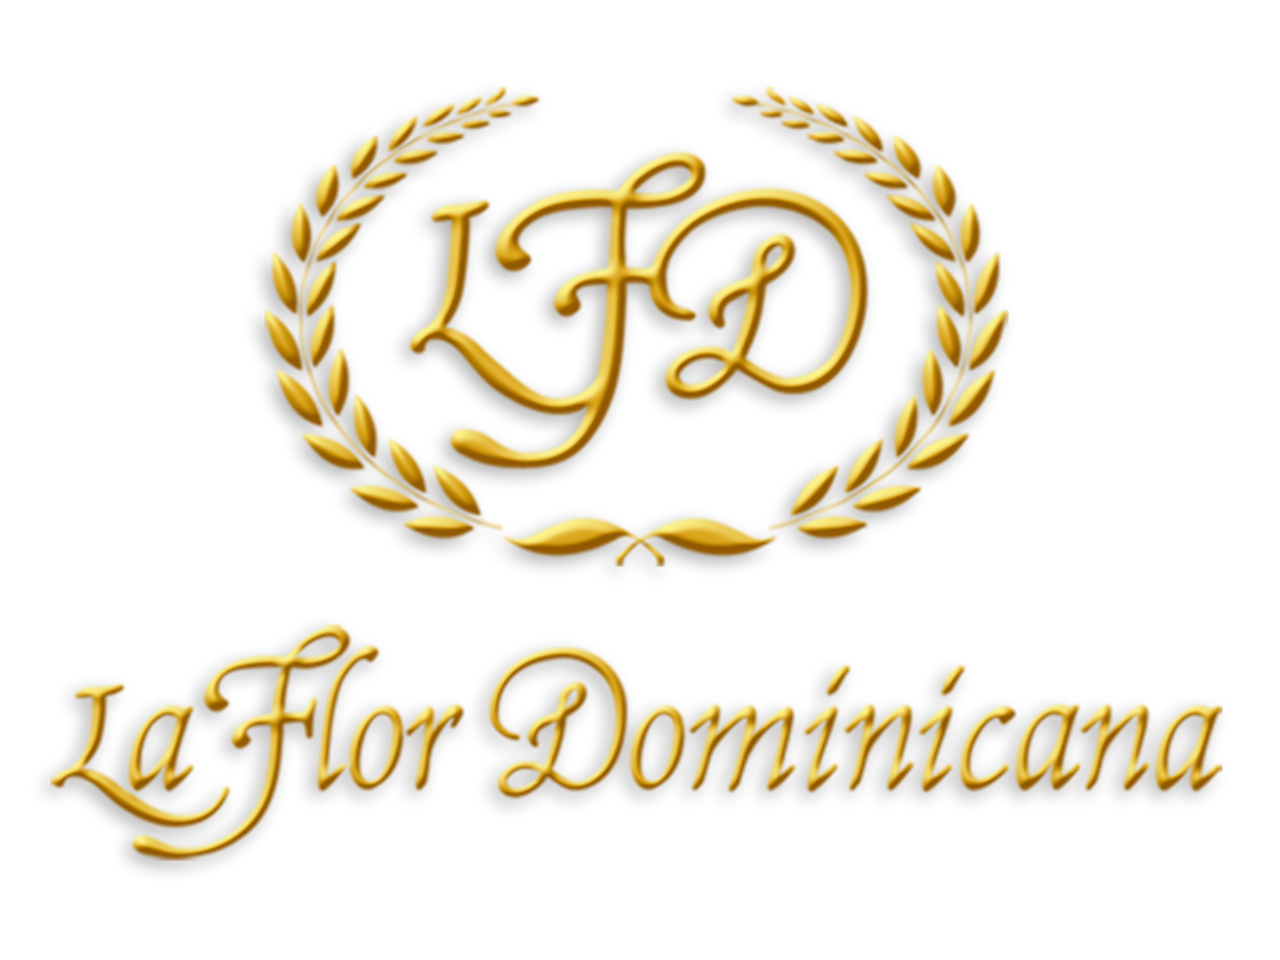 La Flor Dominicana Air Bender Valiente